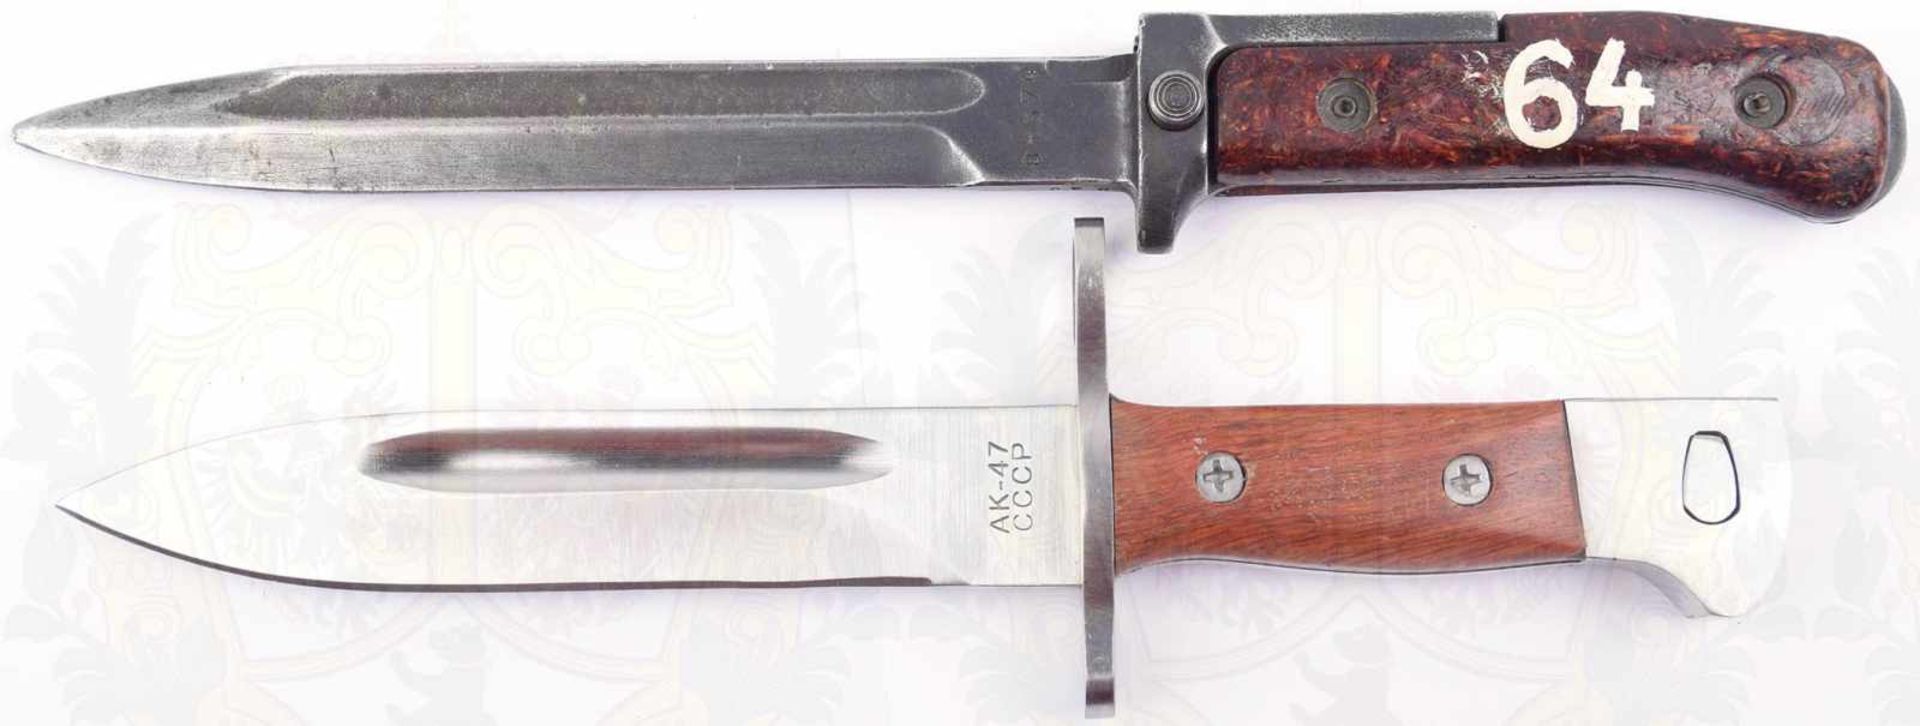 2 SEITENGEWEHRE: tschech. Samopal wz. 58, brünierte Klinge m. Nr. „8t574“, L. 17cm, Eisen- - Bild 2 aus 2